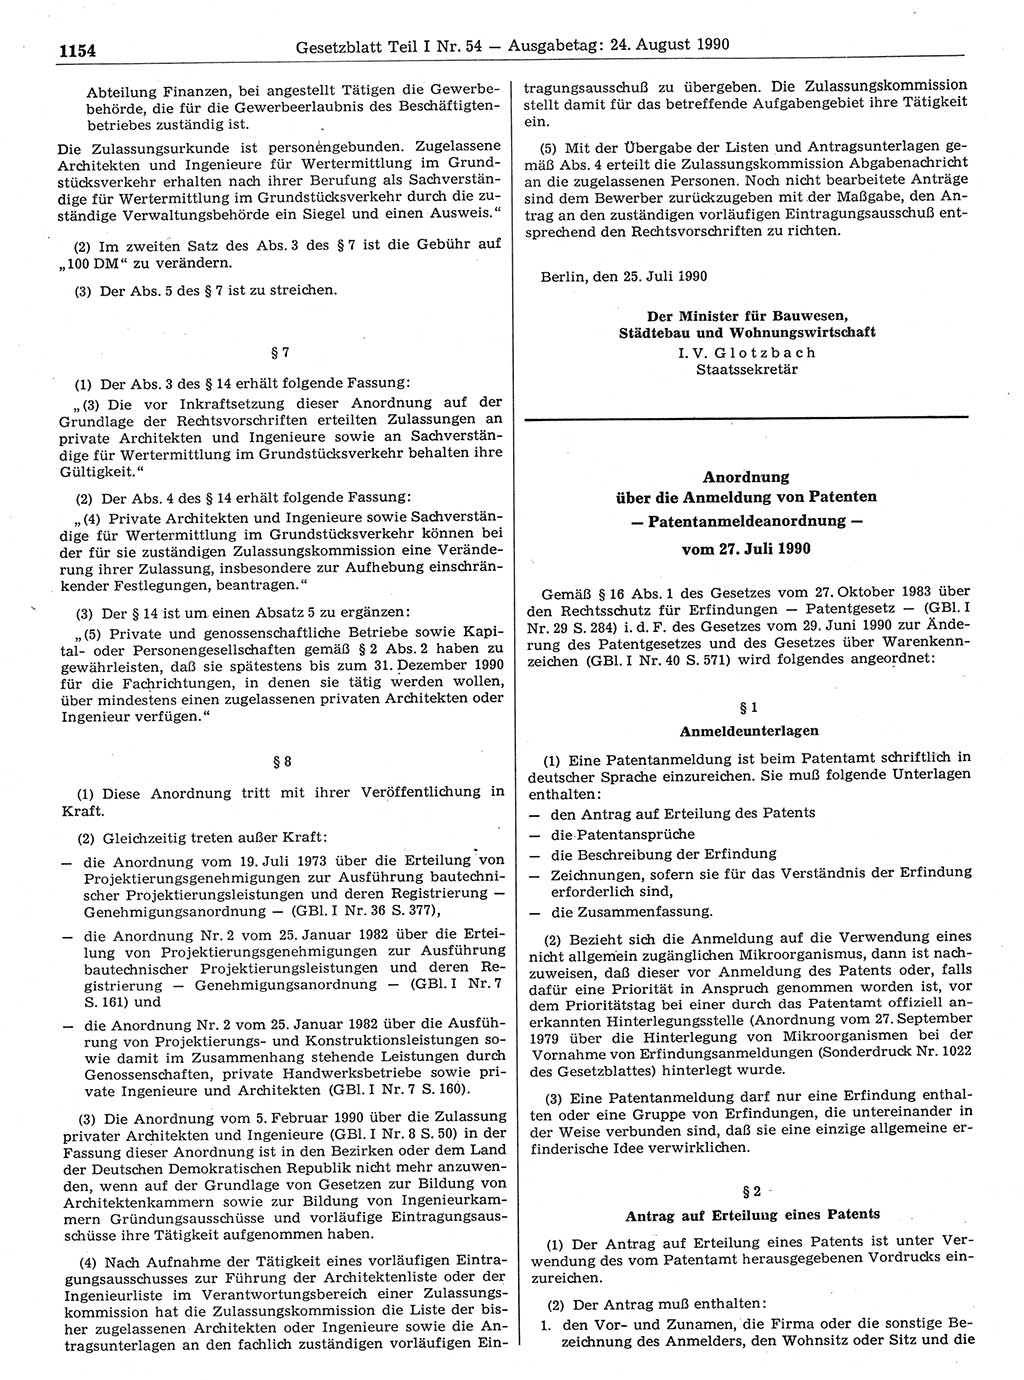 Gesetzblatt (GBl.) der Deutschen Demokratischen Republik (DDR) Teil Ⅰ 1990, Seite 1154 (GBl. DDR Ⅰ 1990, S. 1154)